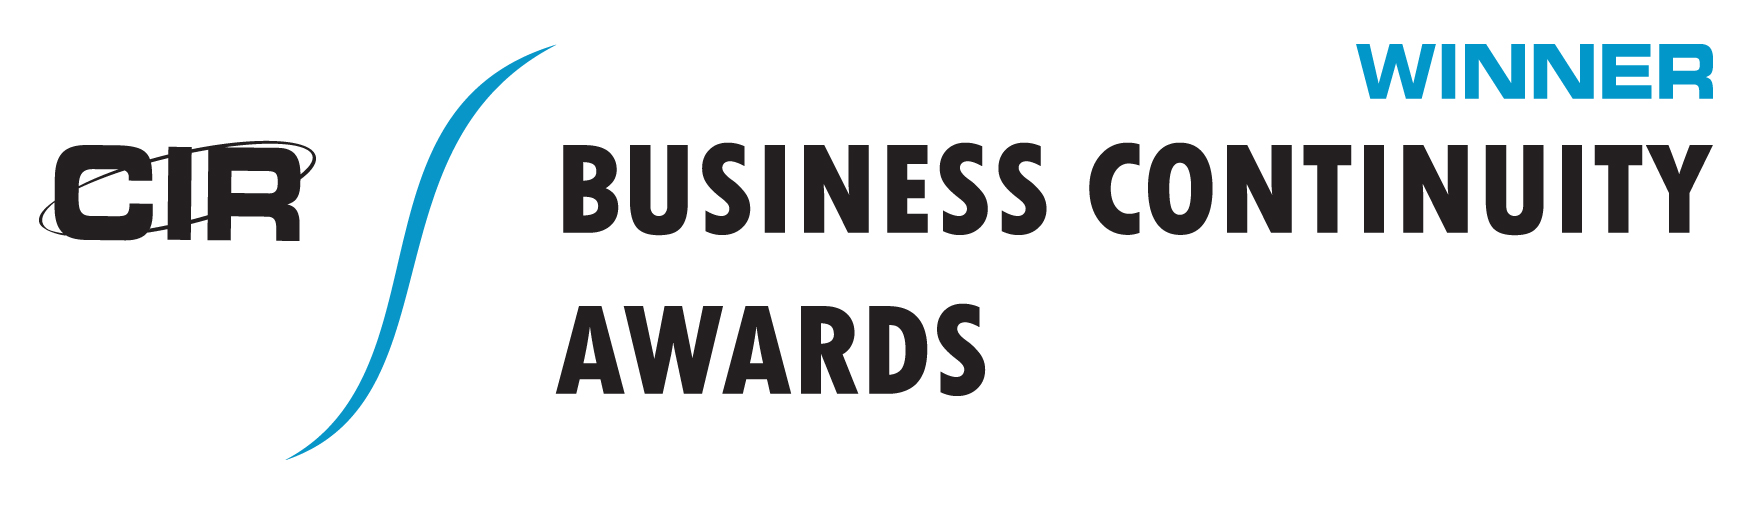 CIR Business Continuity Awards Winner